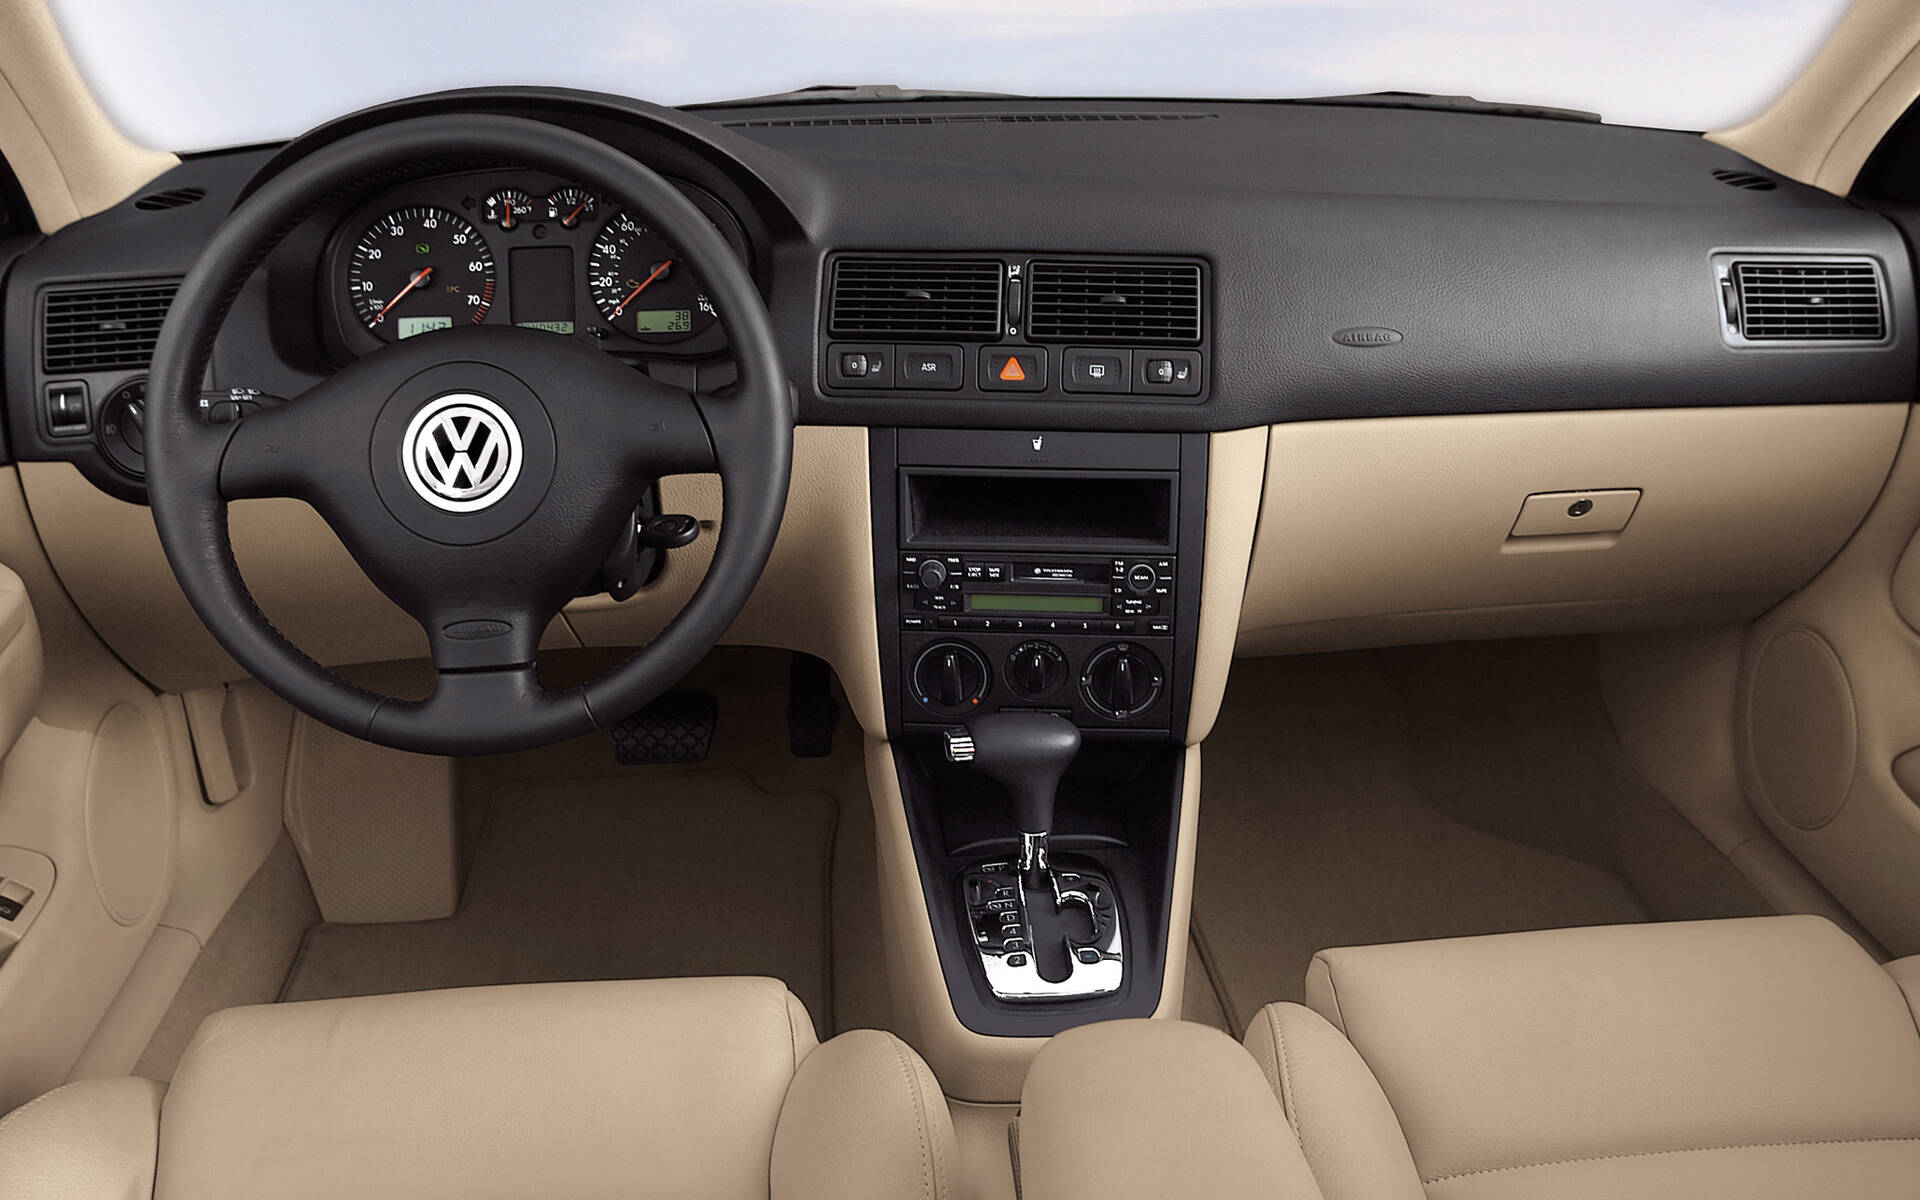 La Volkswagen Golf GTI d’hier à aujourd’hui 504535-la-volkswagen-golf-gti-d-hier-a-aujourd-hui